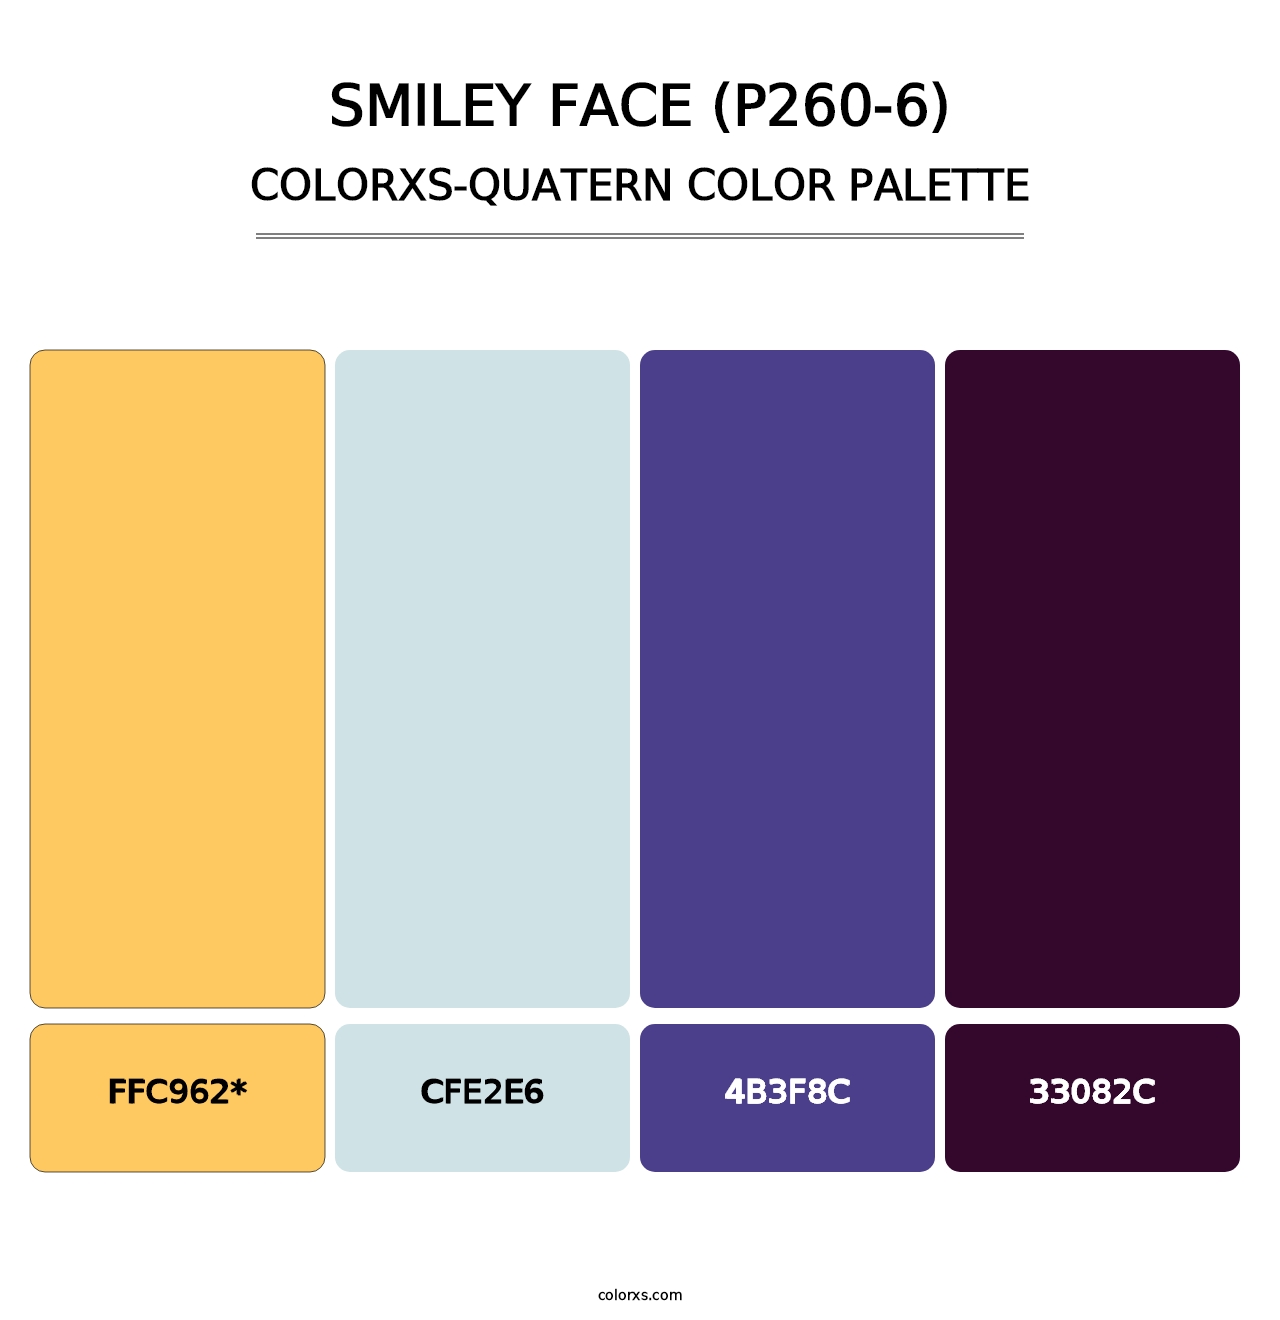 Smiley Face (P260-6) - Colorxs Quatern Palette